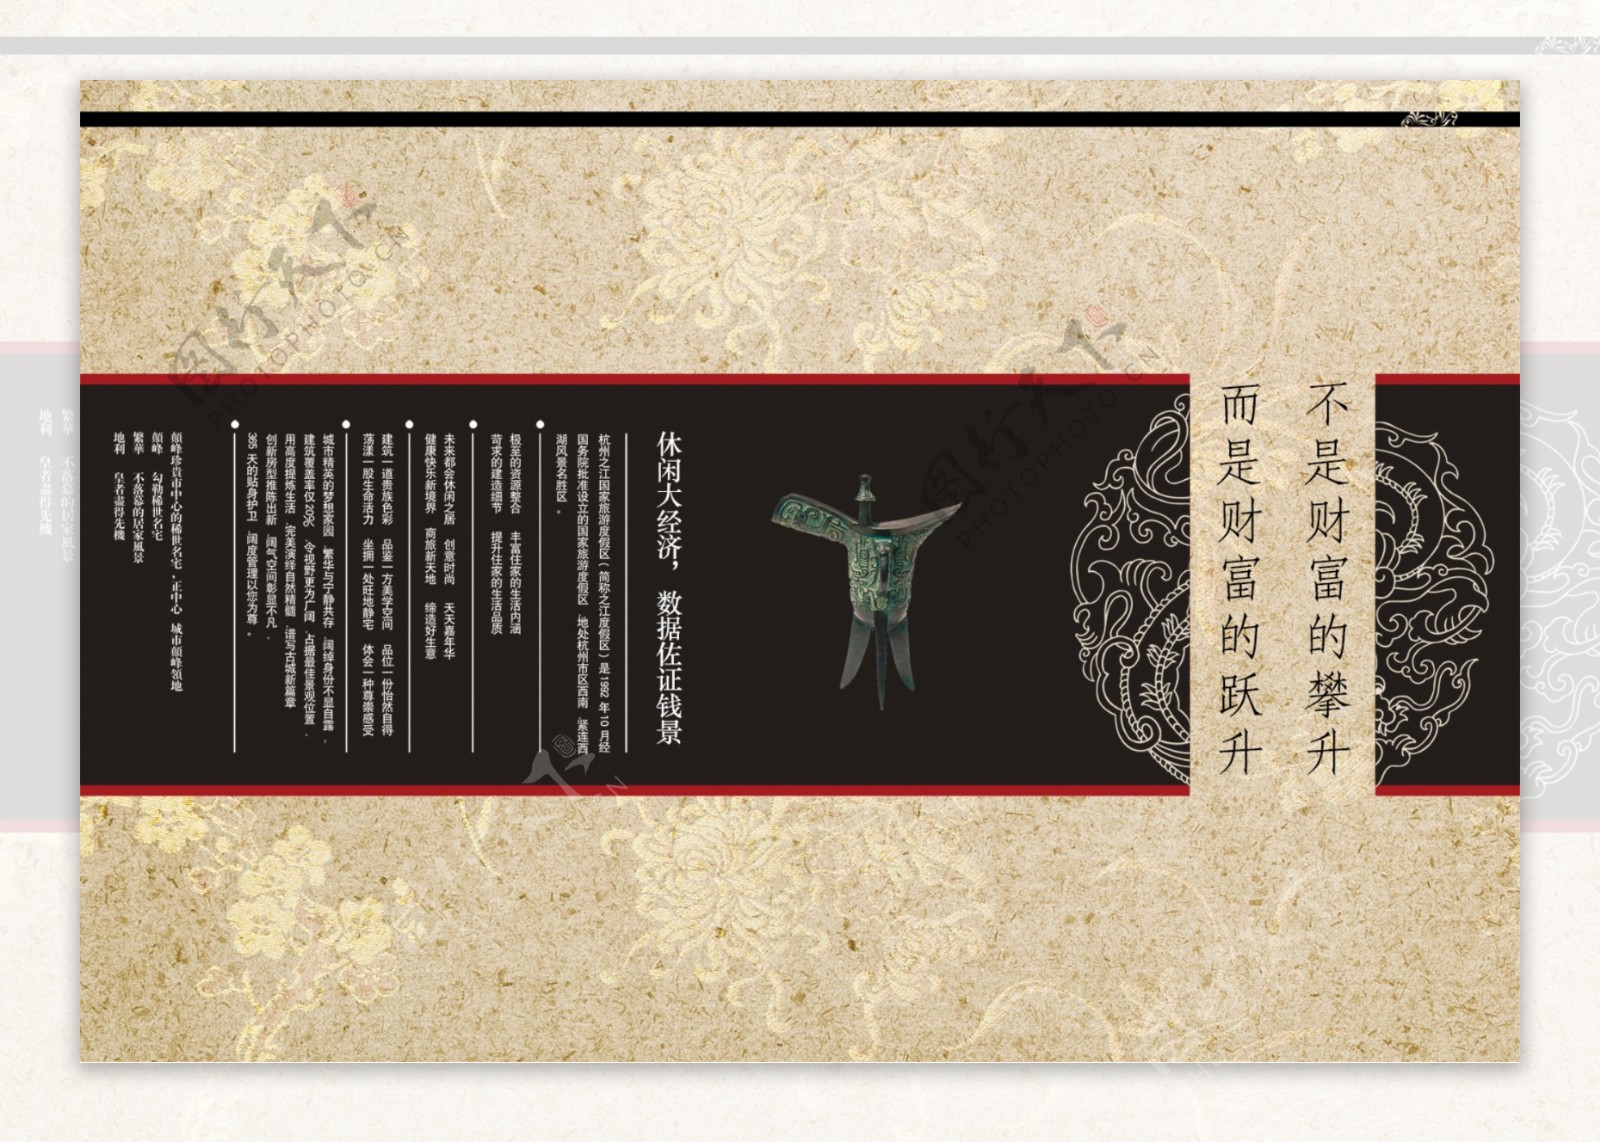 中国风旅游区宣传页设计